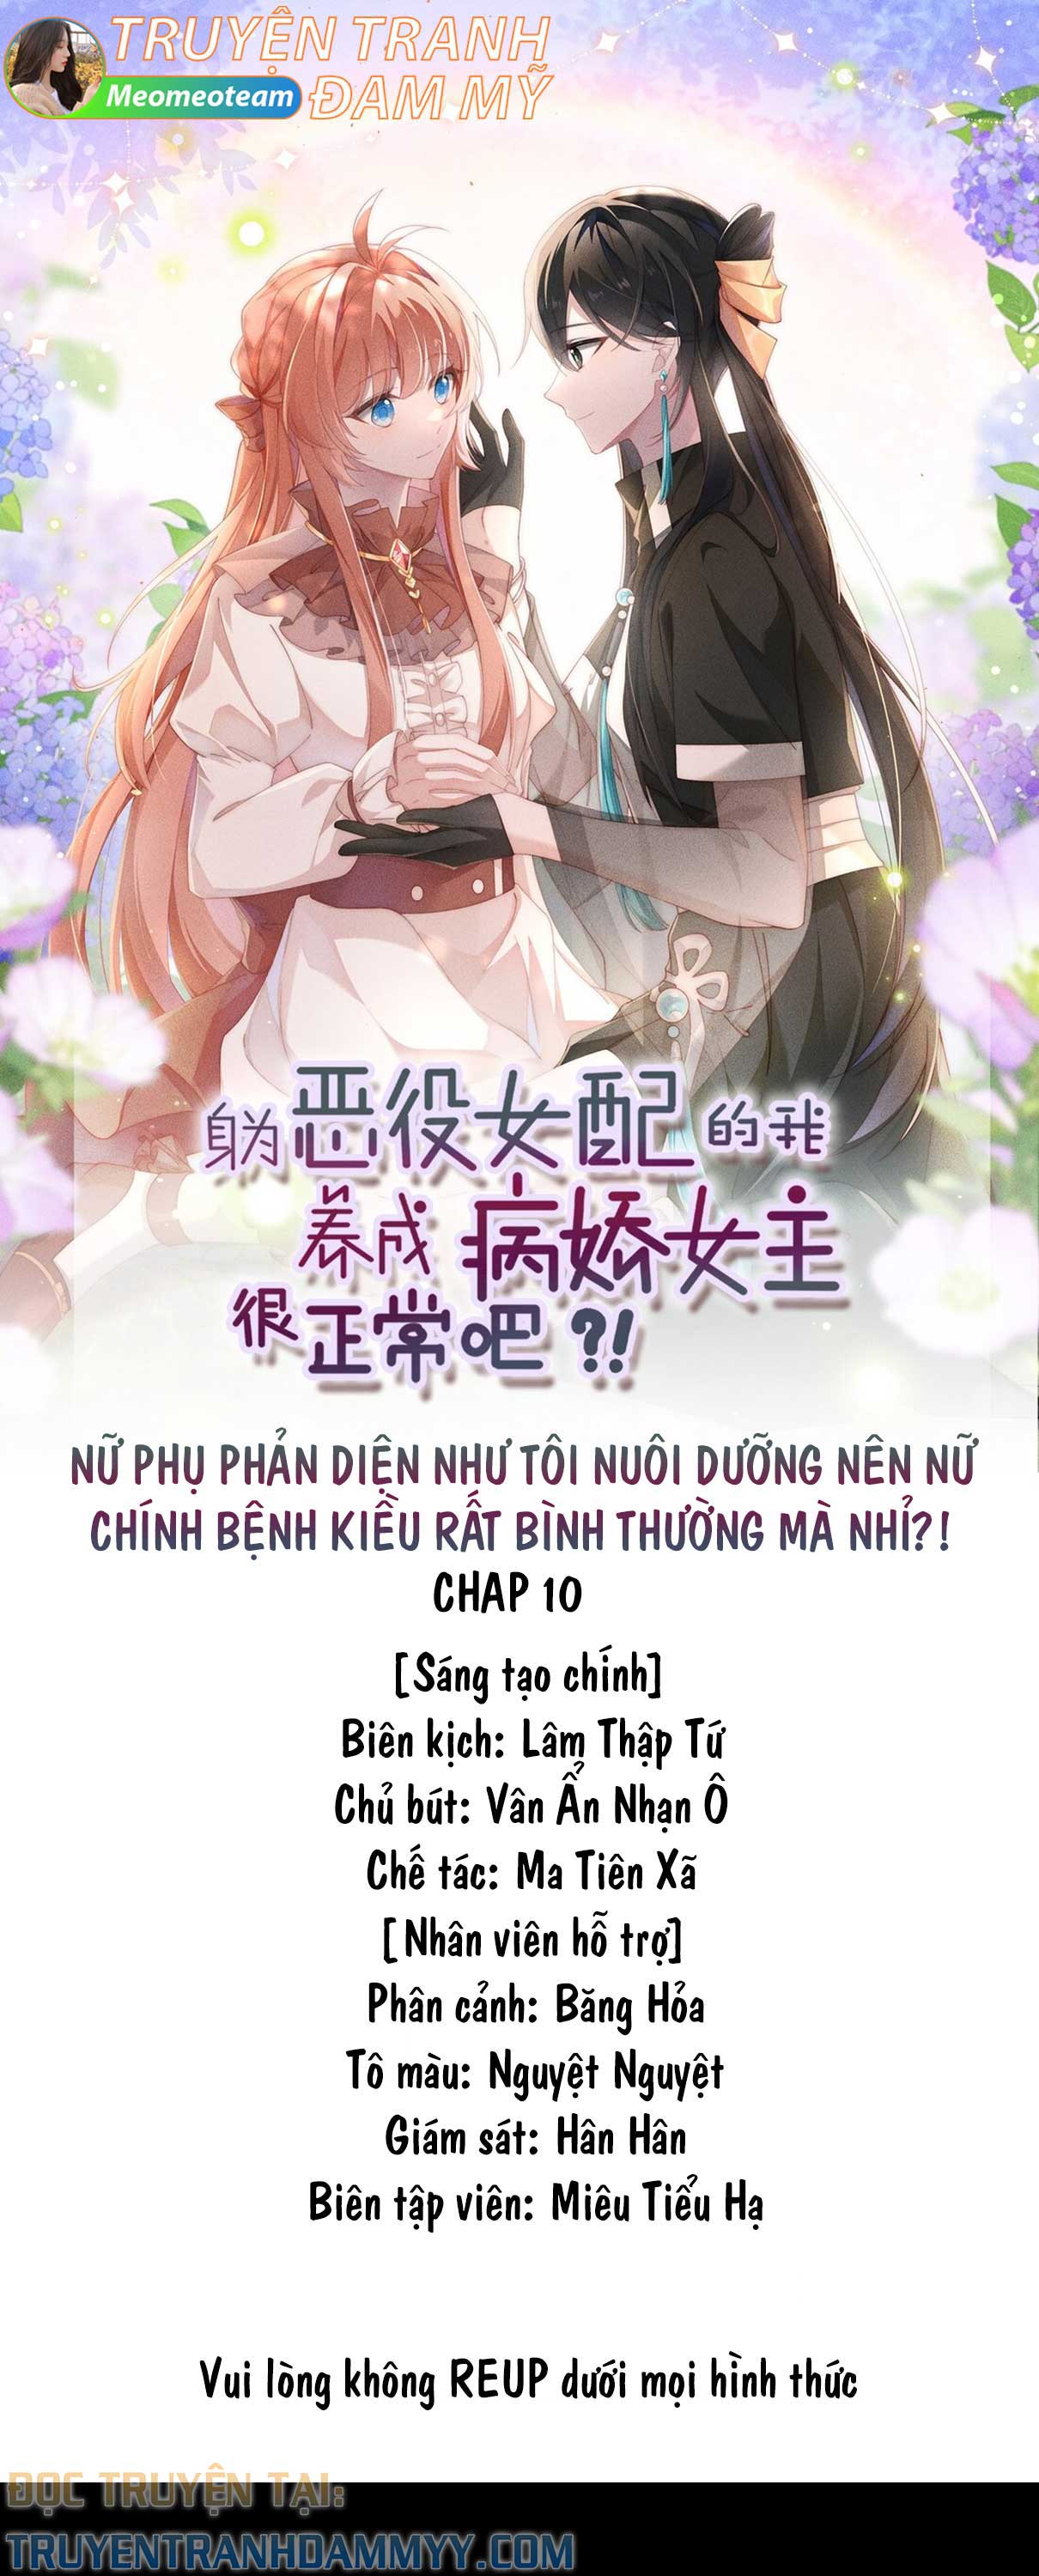 nu-phu-phan-dien-nhu-toi-nuoi-duong-nen-nu-chinh-benh-kieu-rat-binh-thuong-ma-nhi-chap-10-0